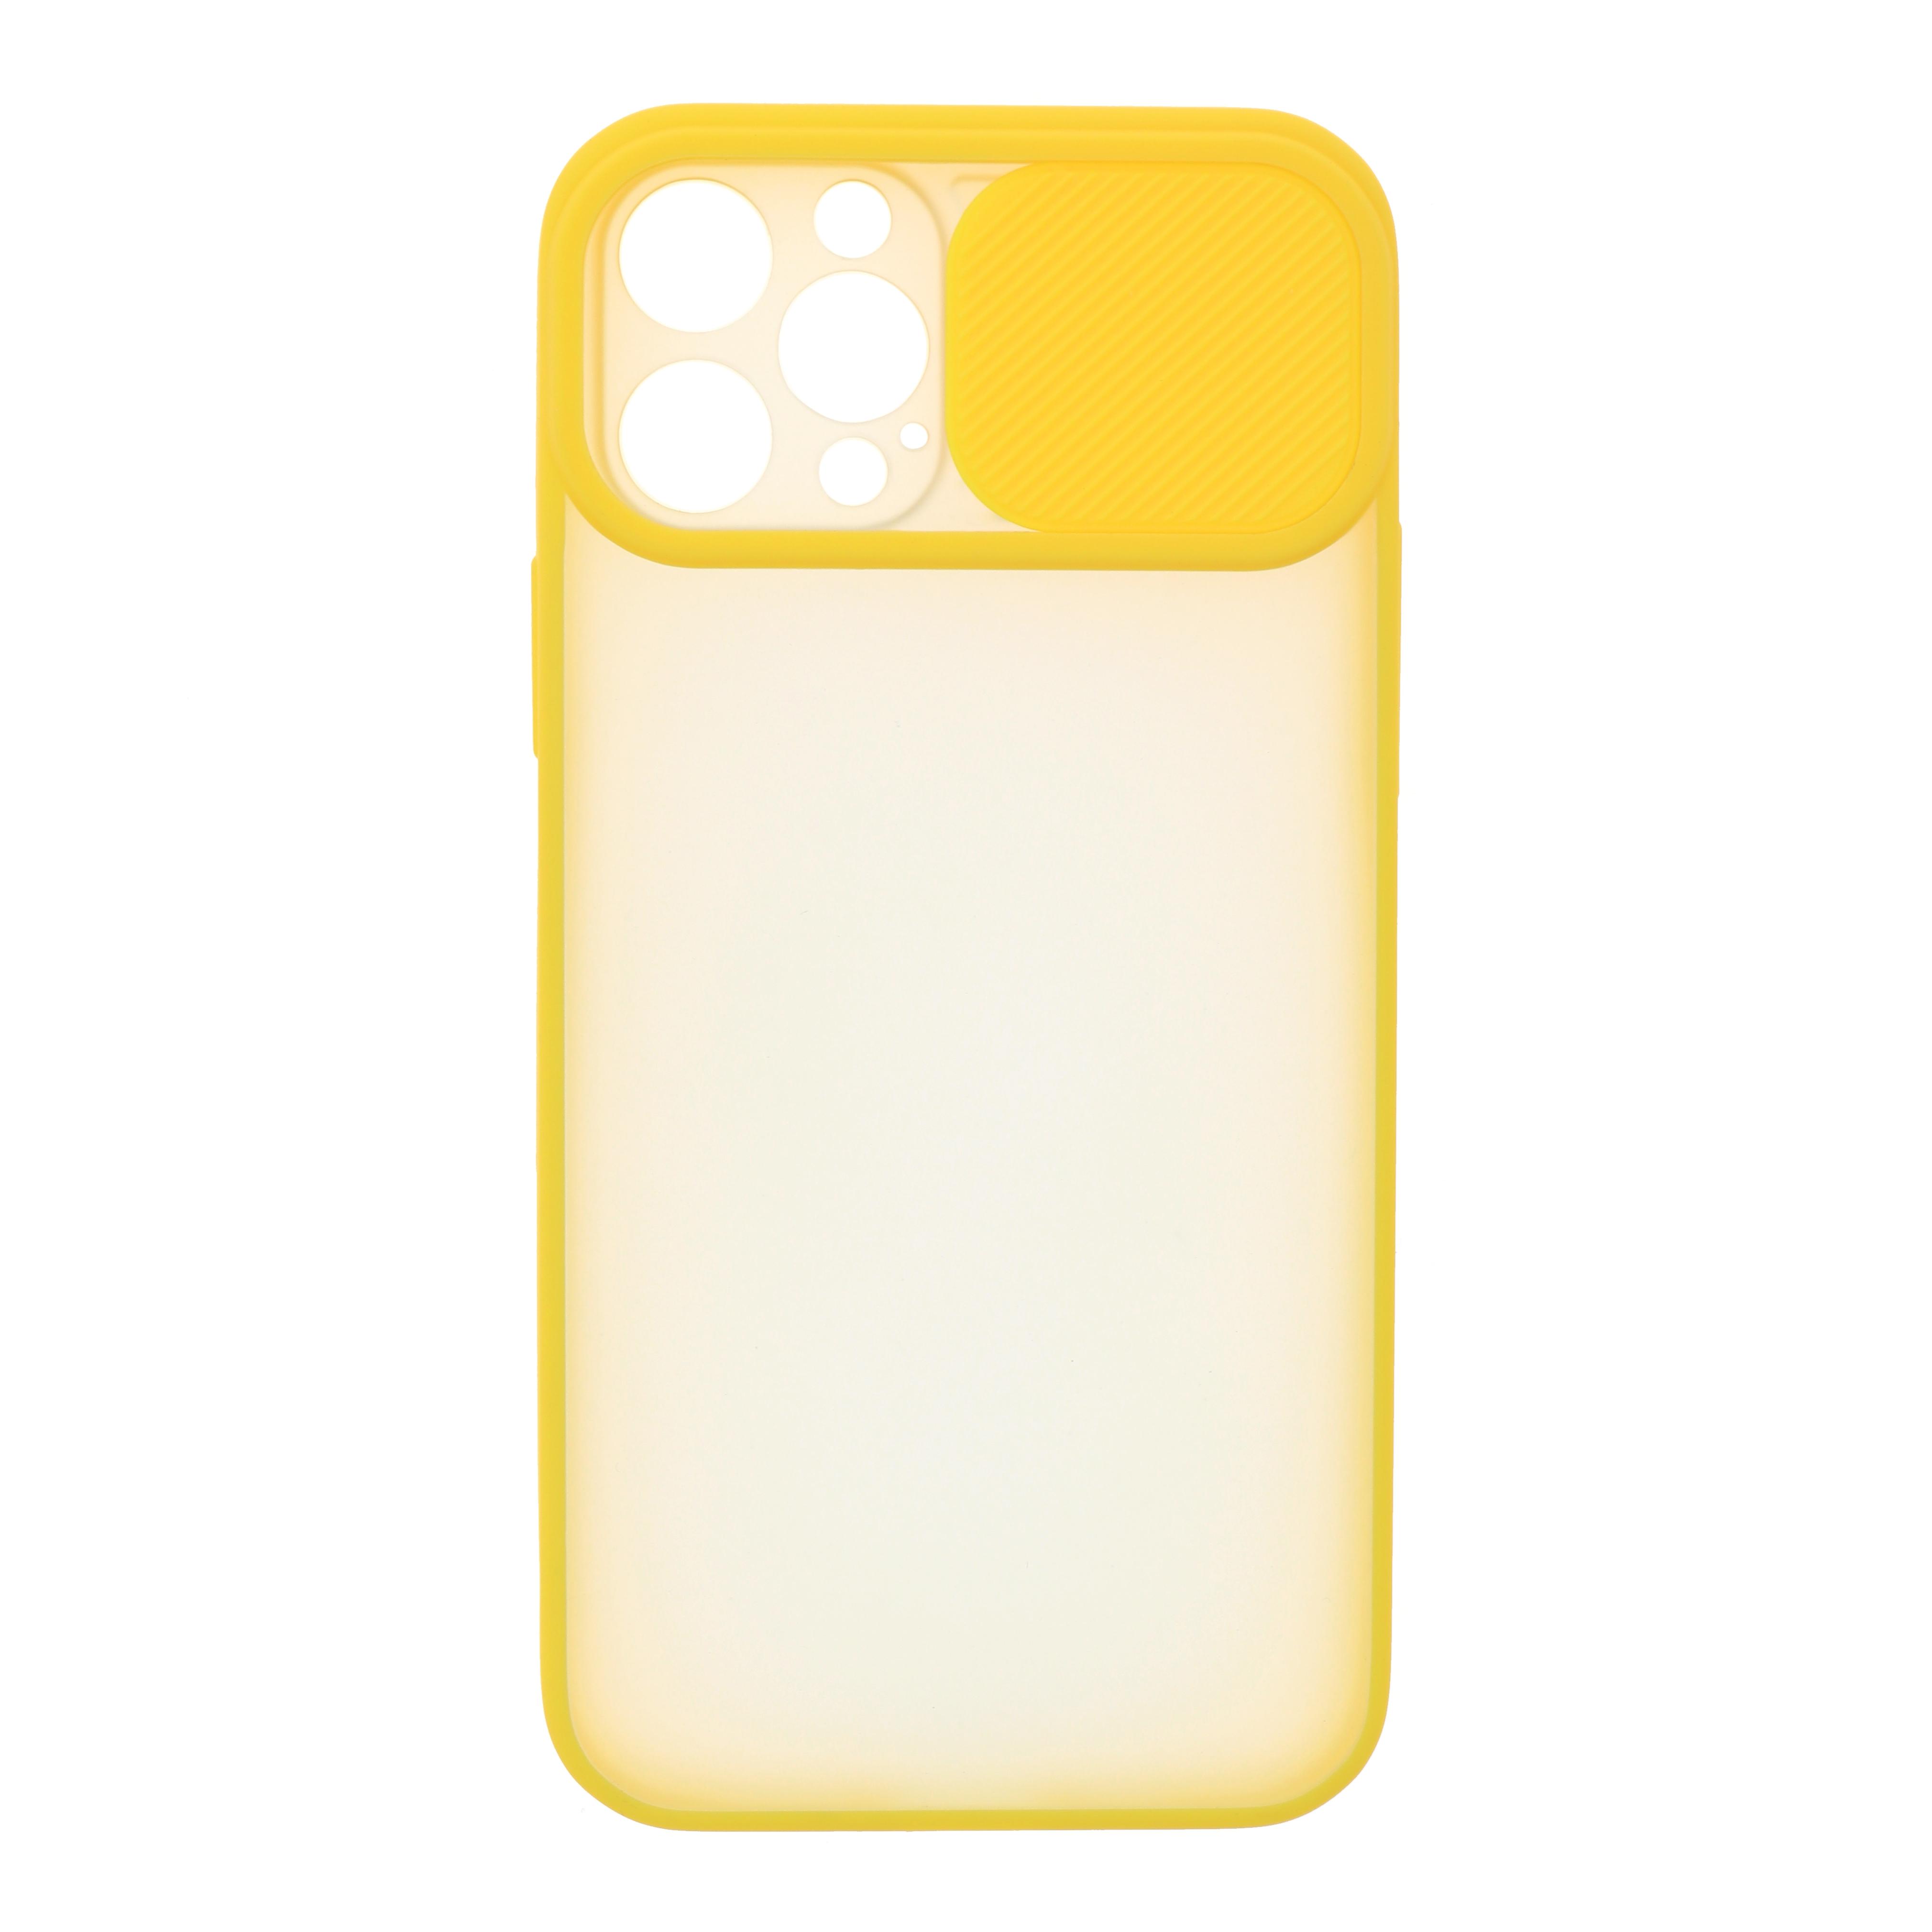 Фото 1 Силиконовый чехол для iPhone 12 mini со шторкой защищающей камеру CG Yellow